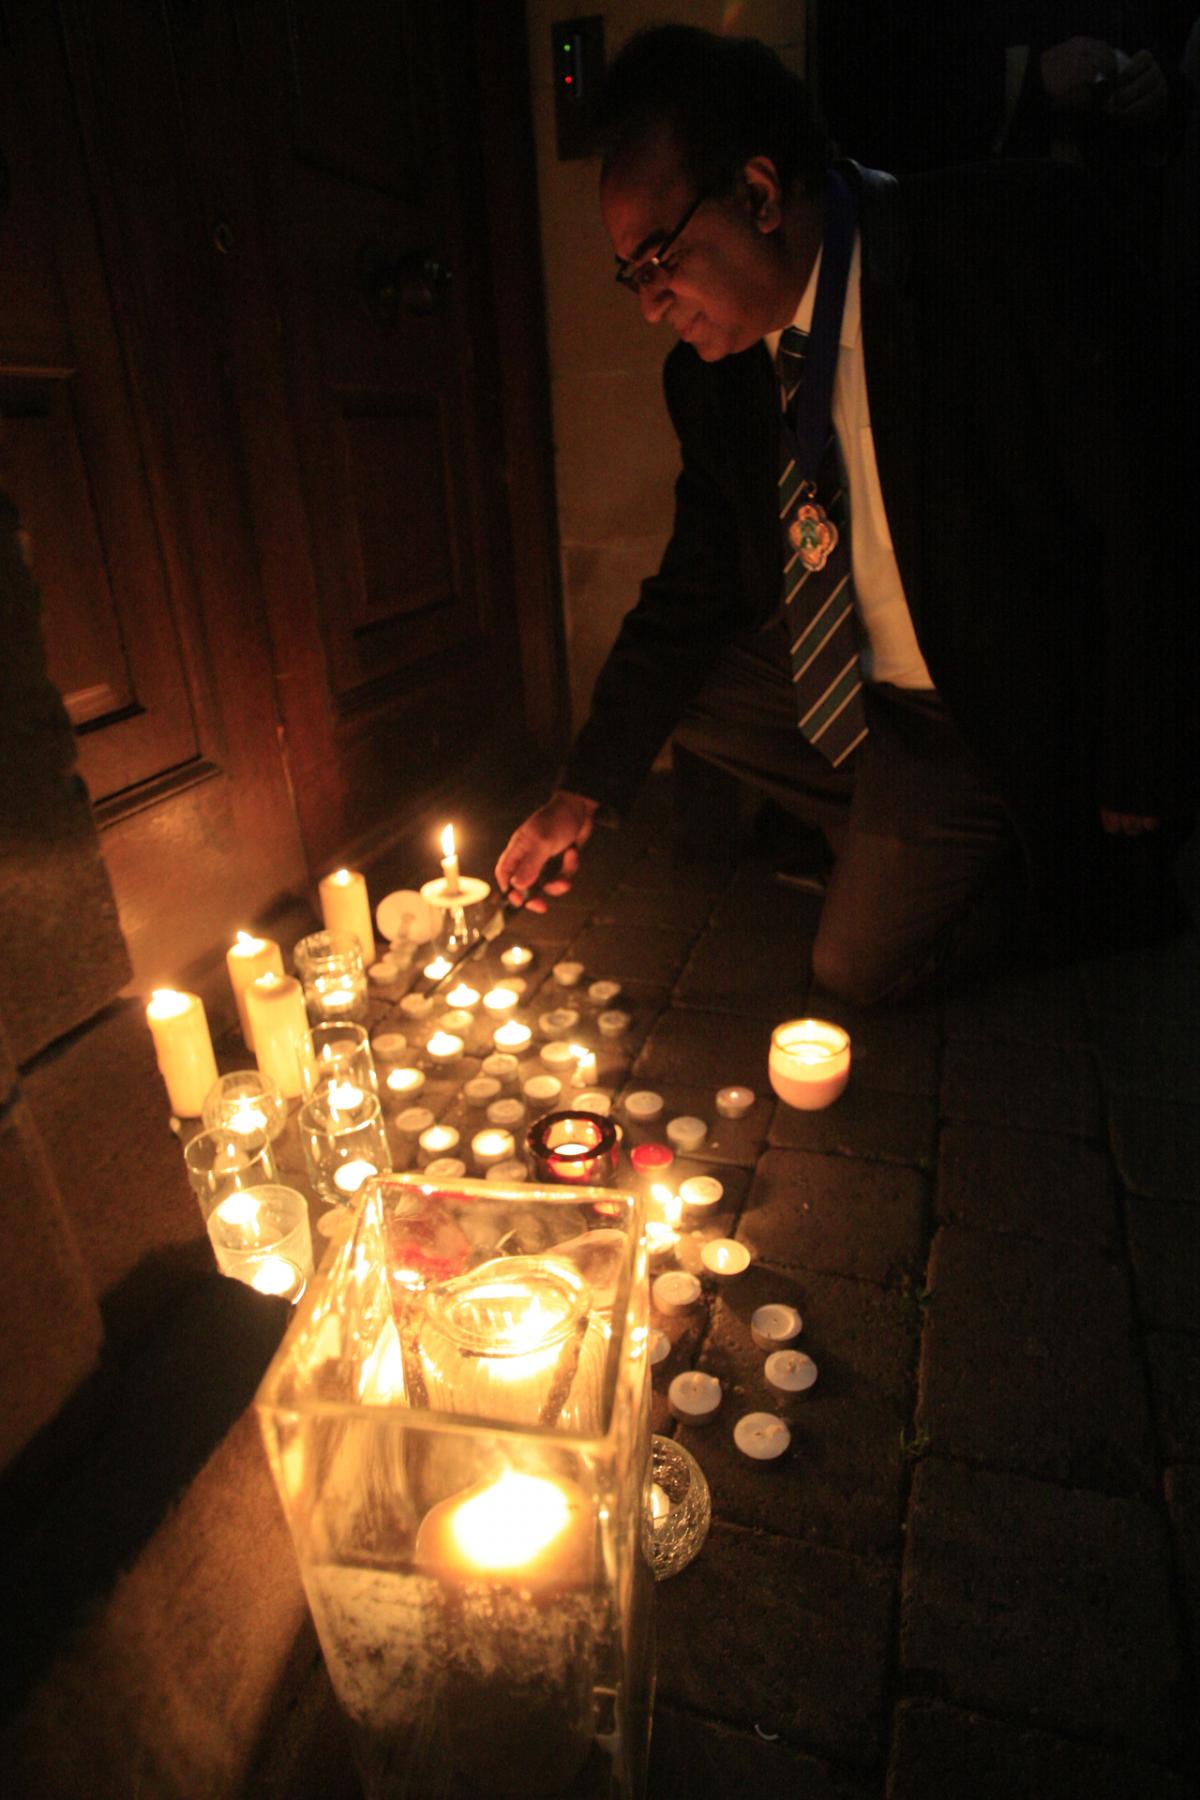 Paris vigil outside Wycombe District Council offices - ARM Images